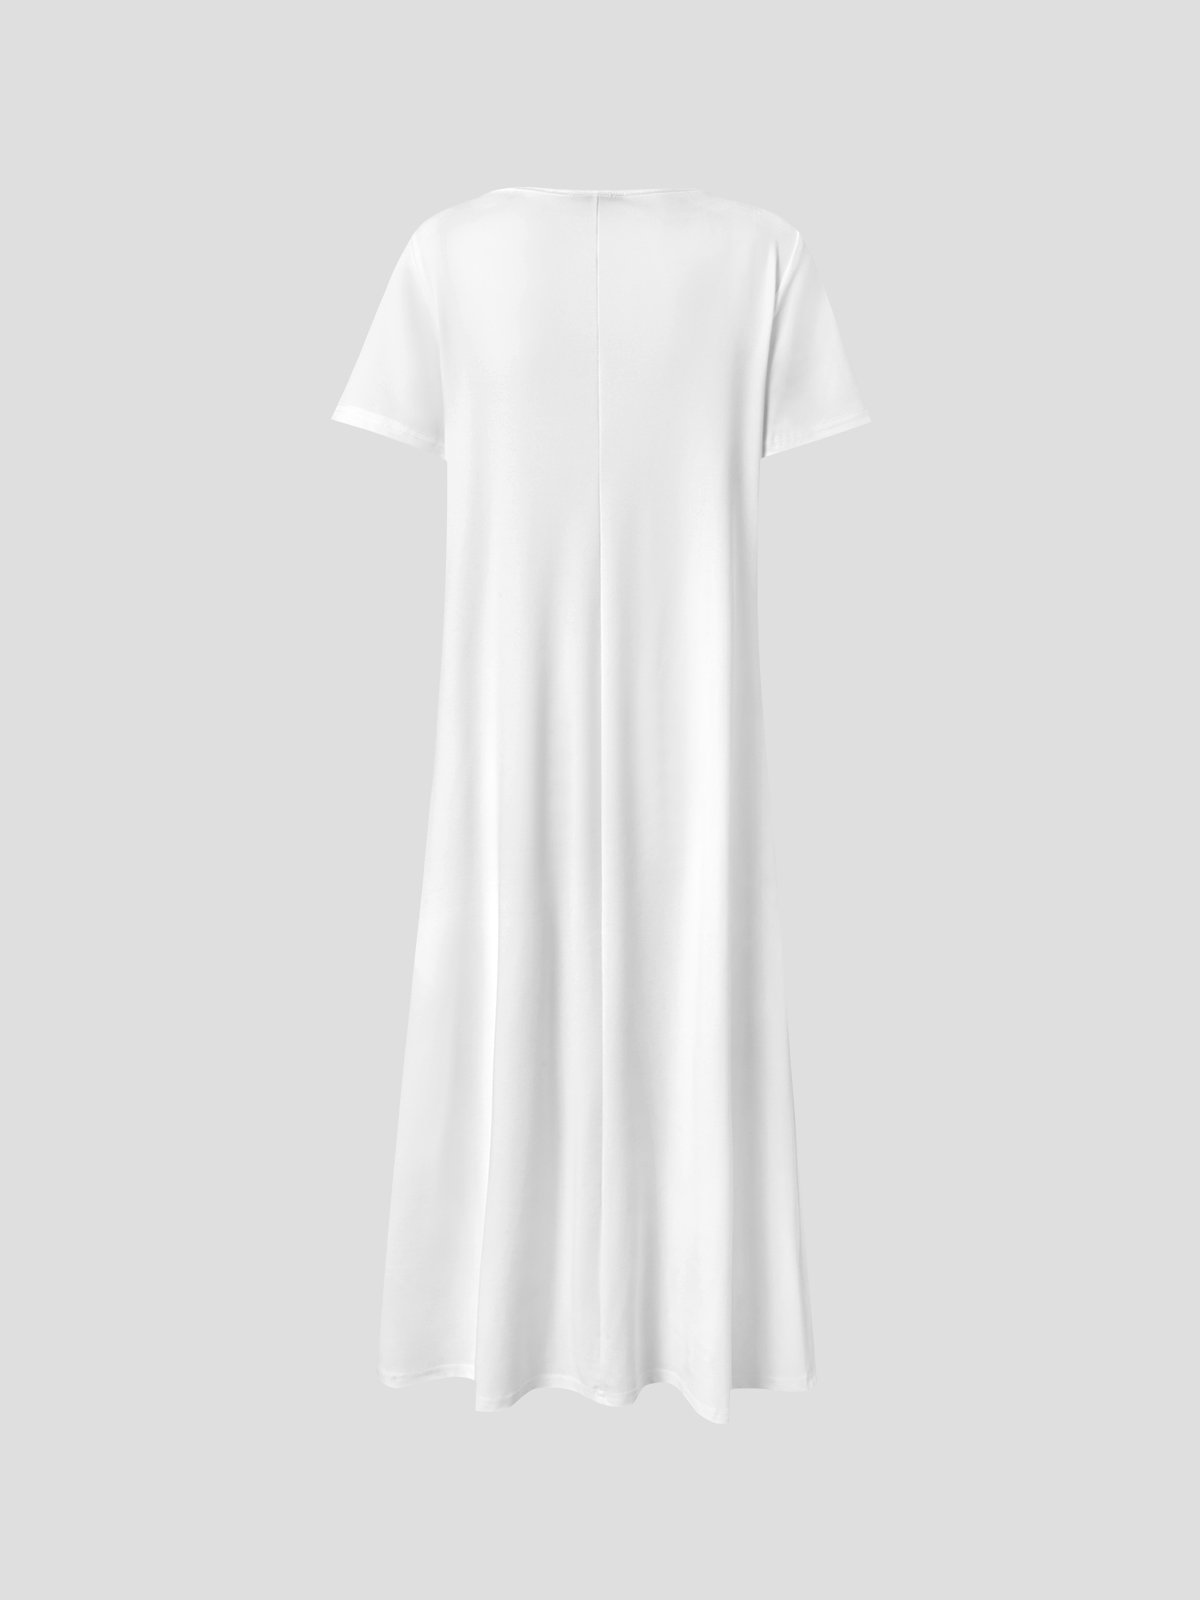 Lässig Unifarben V-Ausschnitt Kurzarm Stricken Kleid